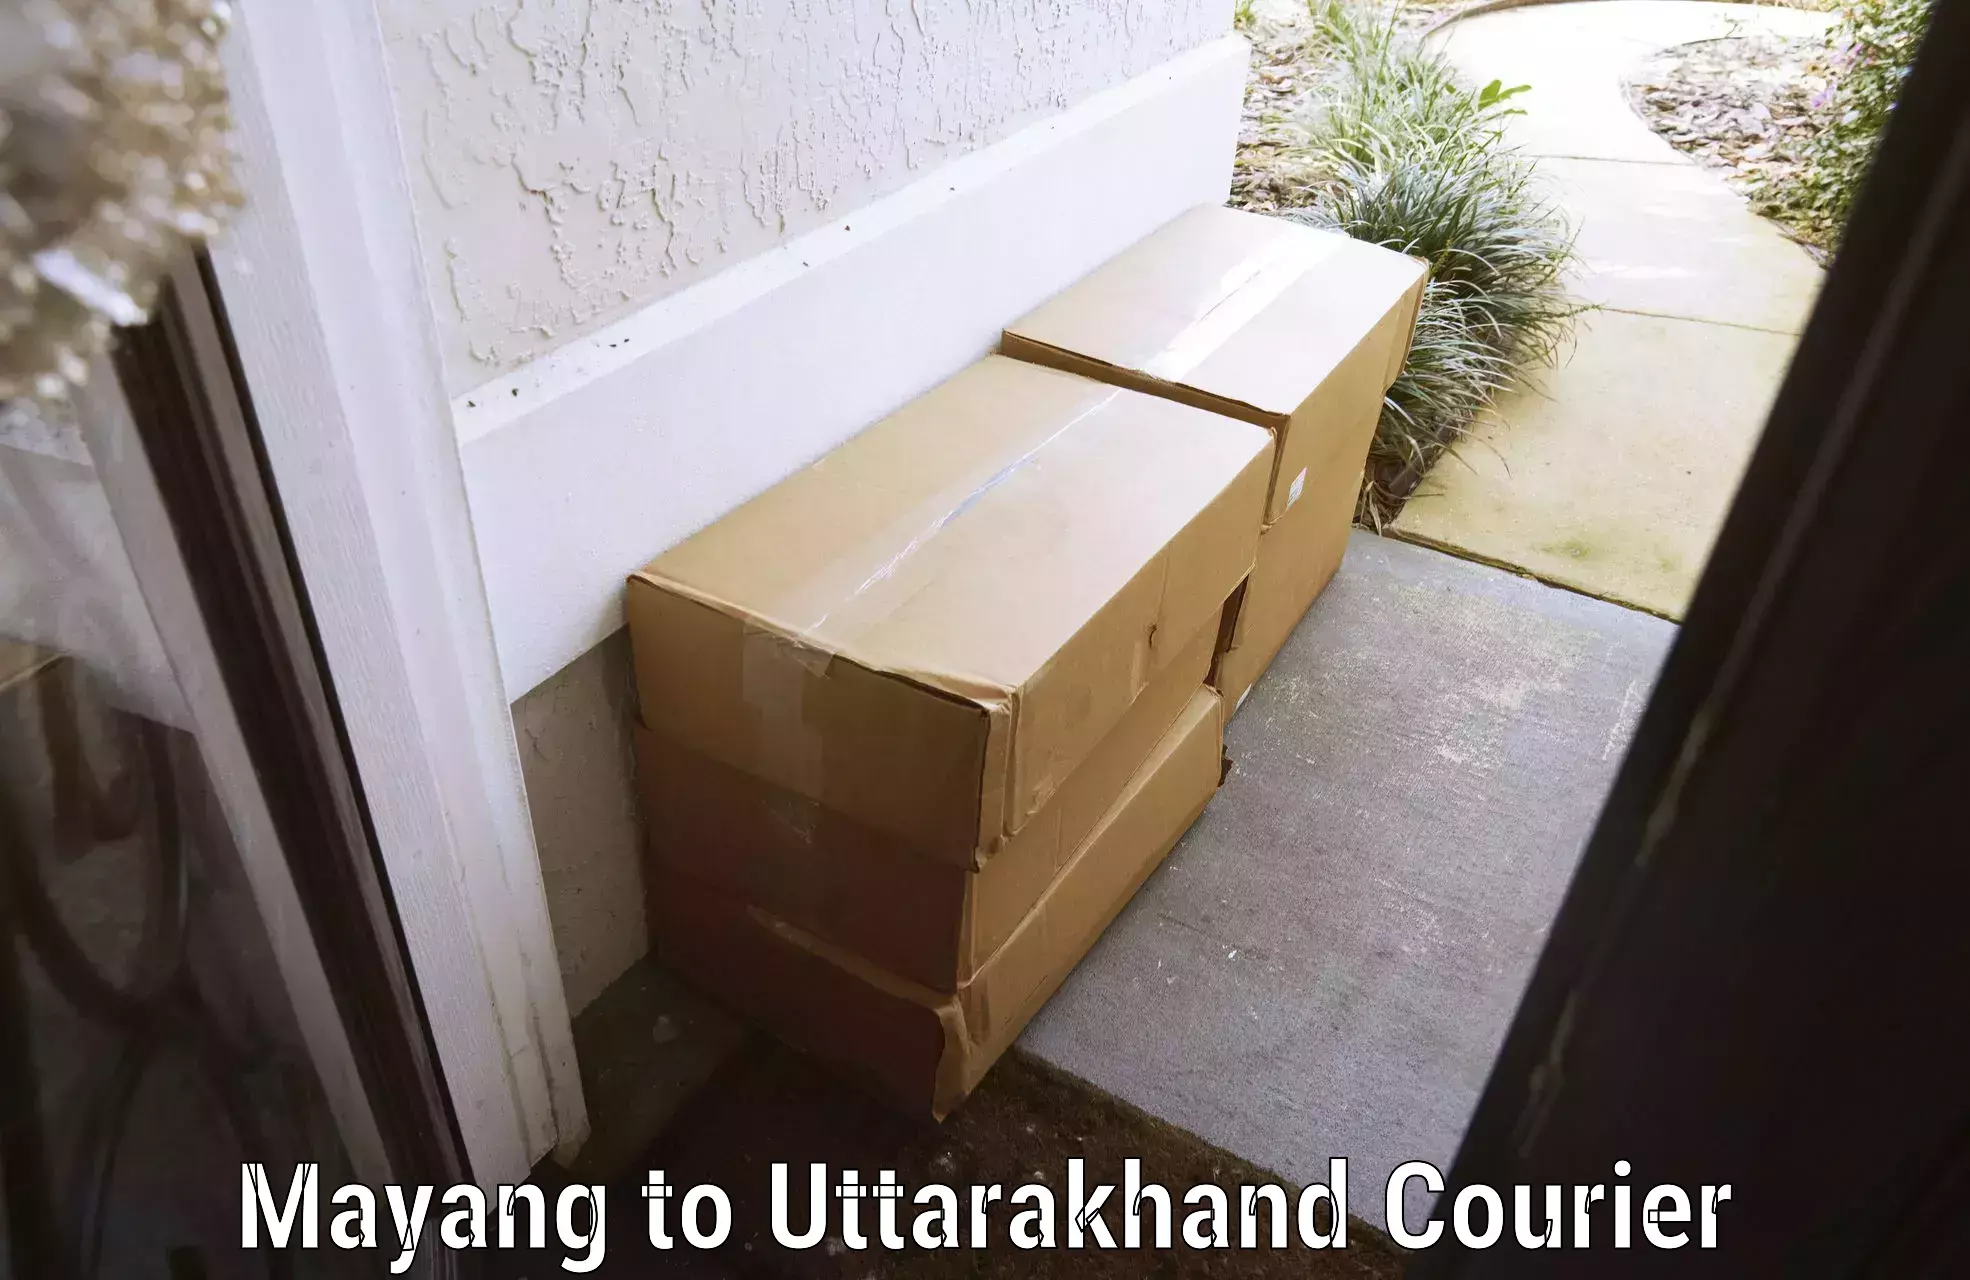 Luggage transport company Mayang to Uttarakhand